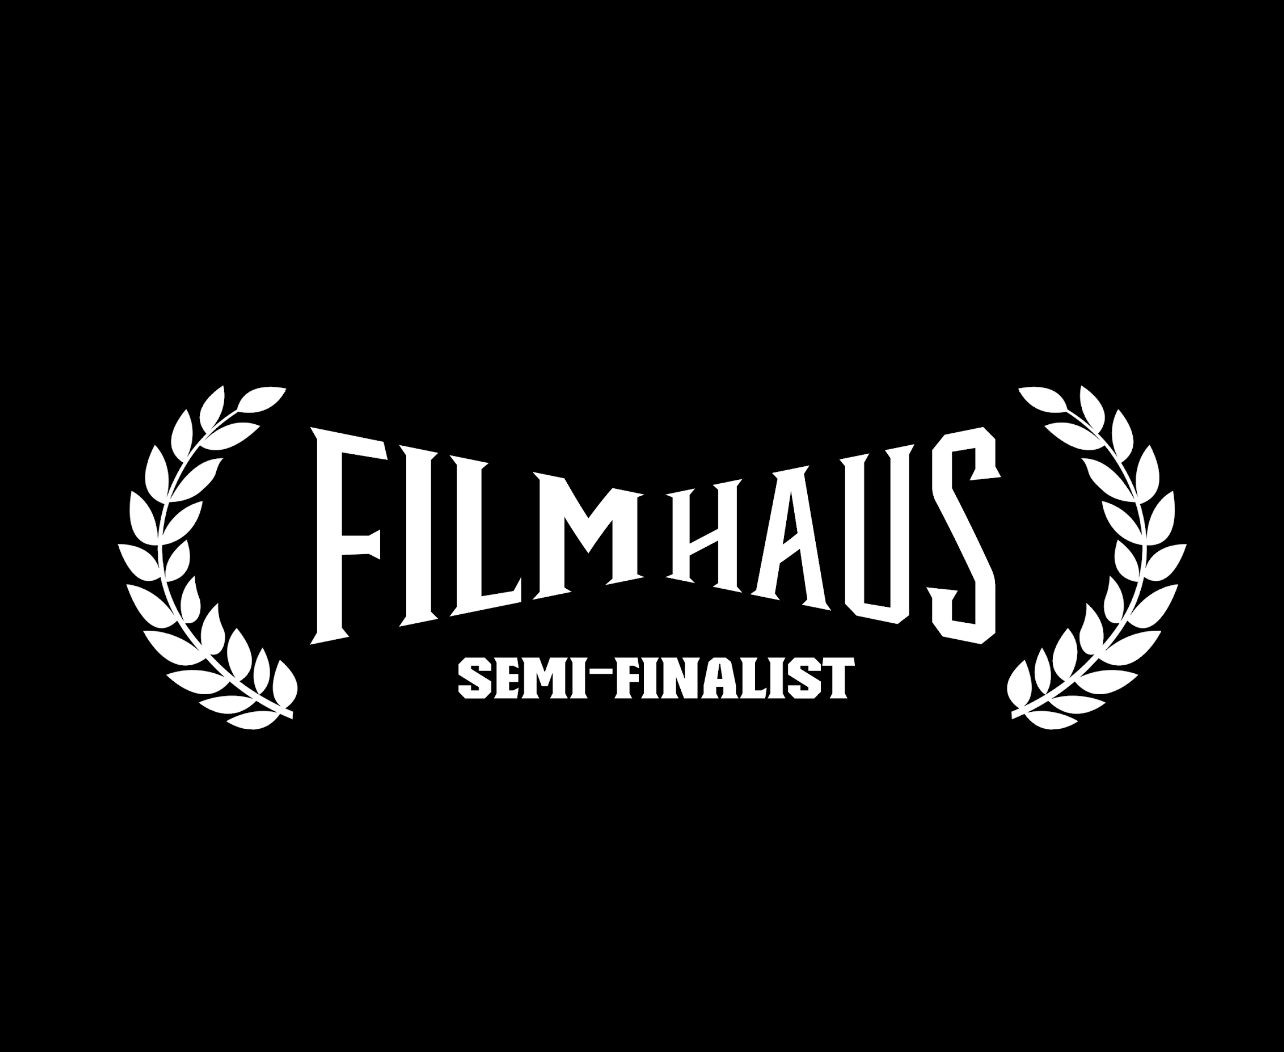 FilmHaus Film Festival Best Thriller 2023 Nomination Loved The Movie